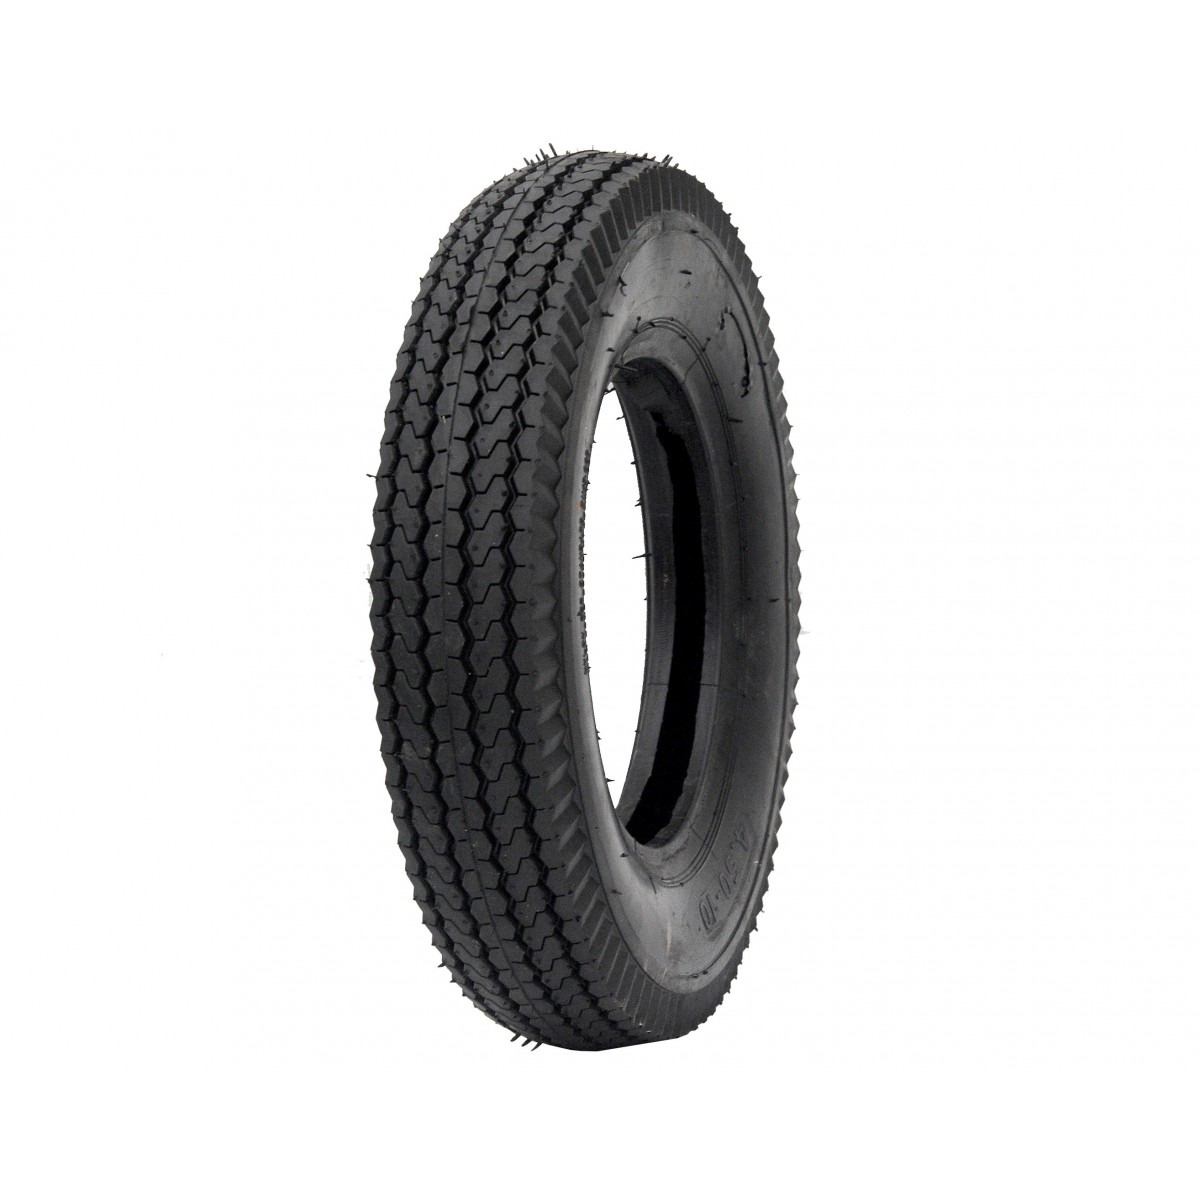 Agricultural tire 4.50-10 8PR 4.5-10 4.5x10 GRASS